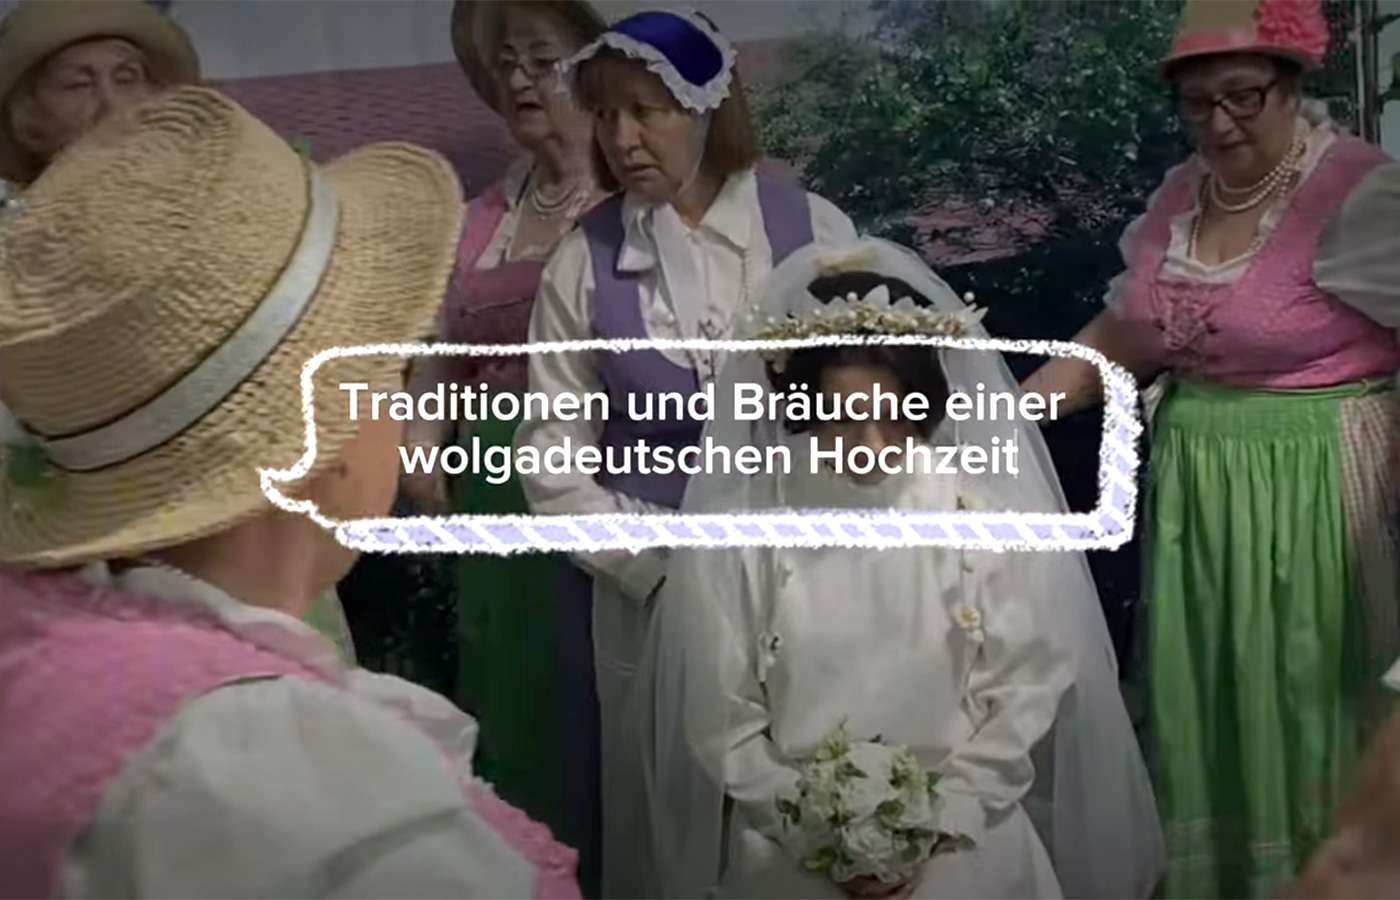 ВИДЕО: «Traditionen und Bräuche einer wolgadeutschen Hochzeit» в Караганде